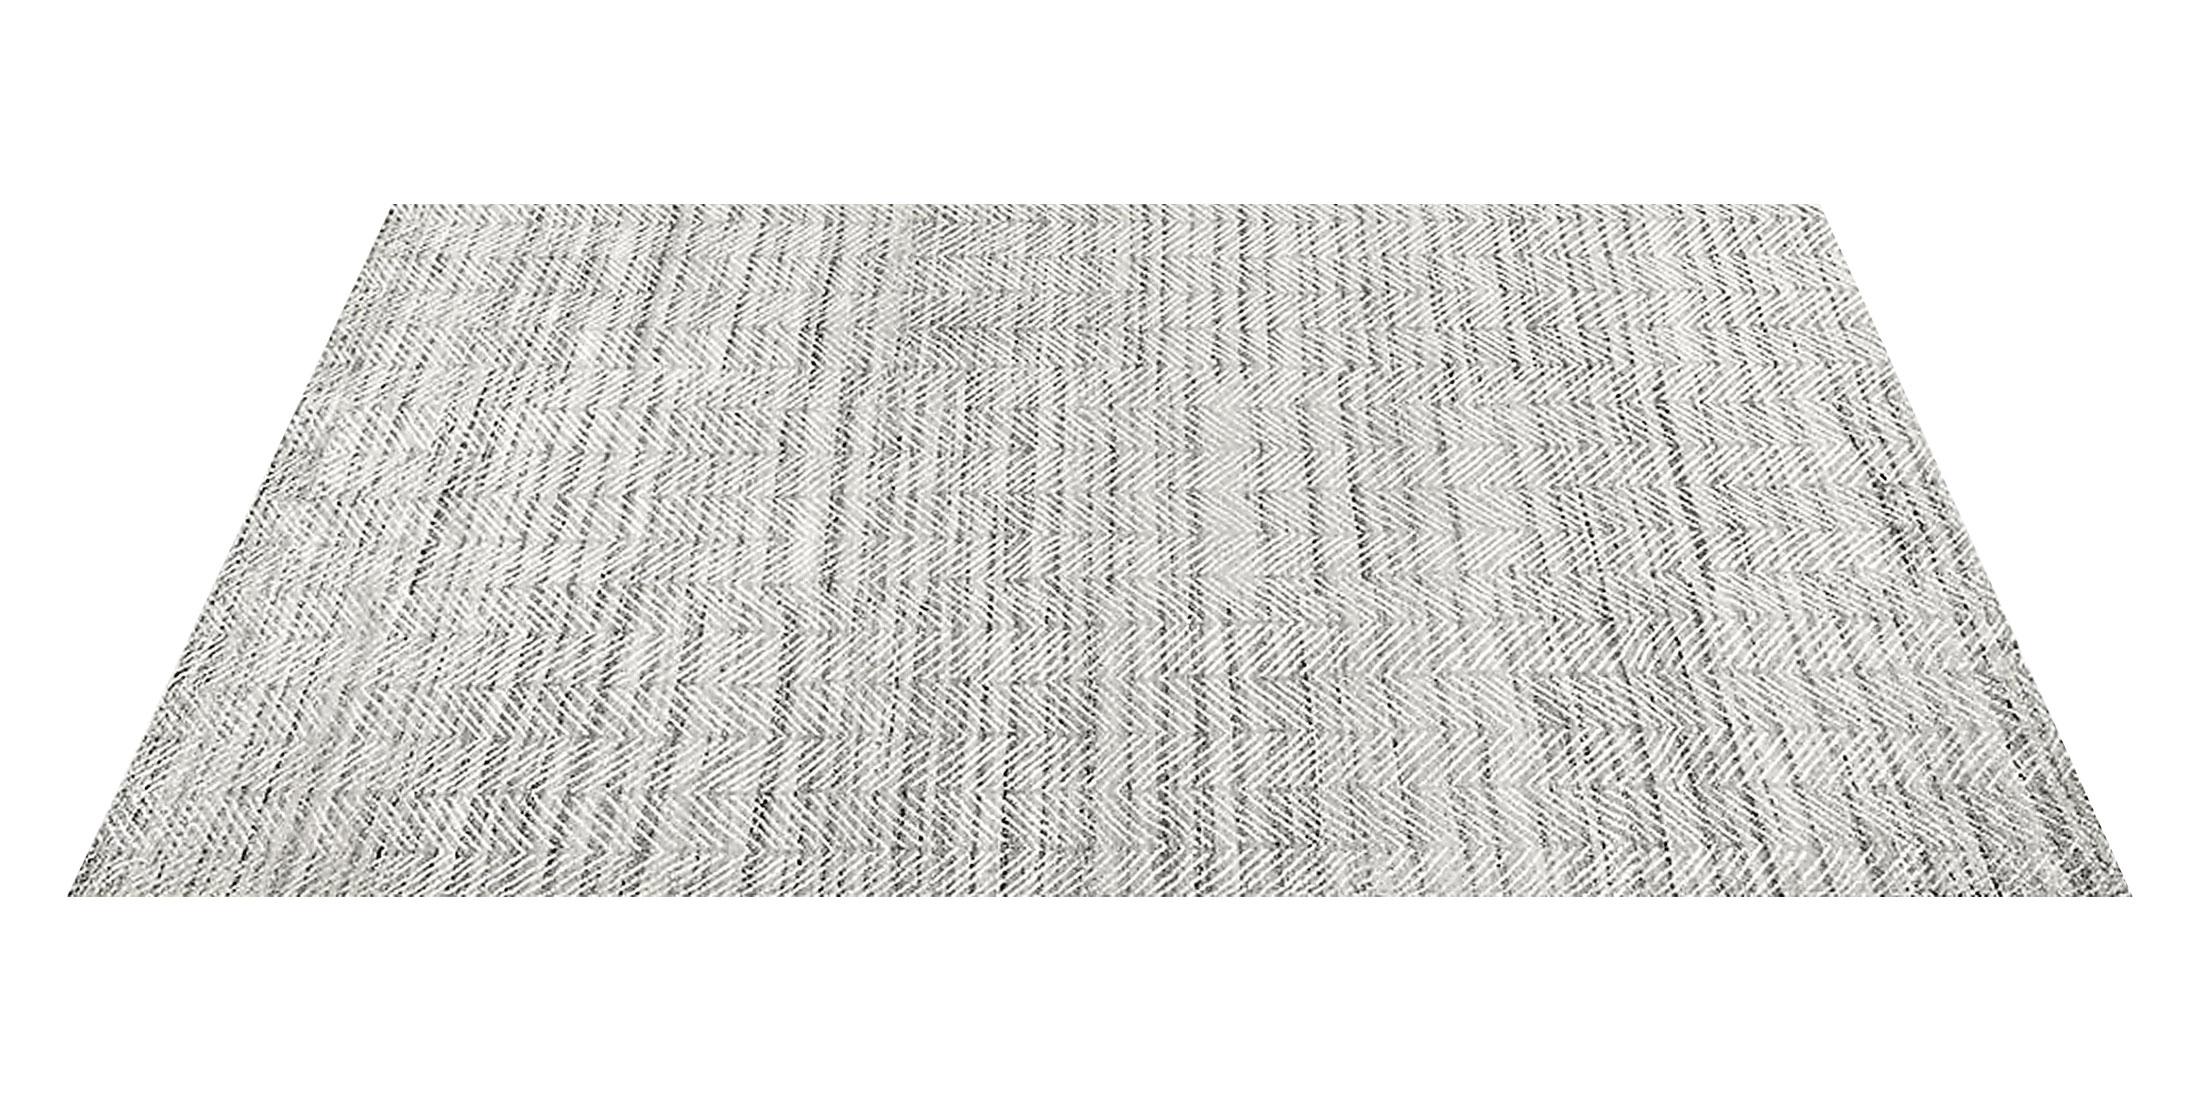 For Sale: Gray (Silver/White) Ben Soleimani Alia Rug– Hand-woven Chevron Wool + Viscose Black/Gray 10'x14' 2